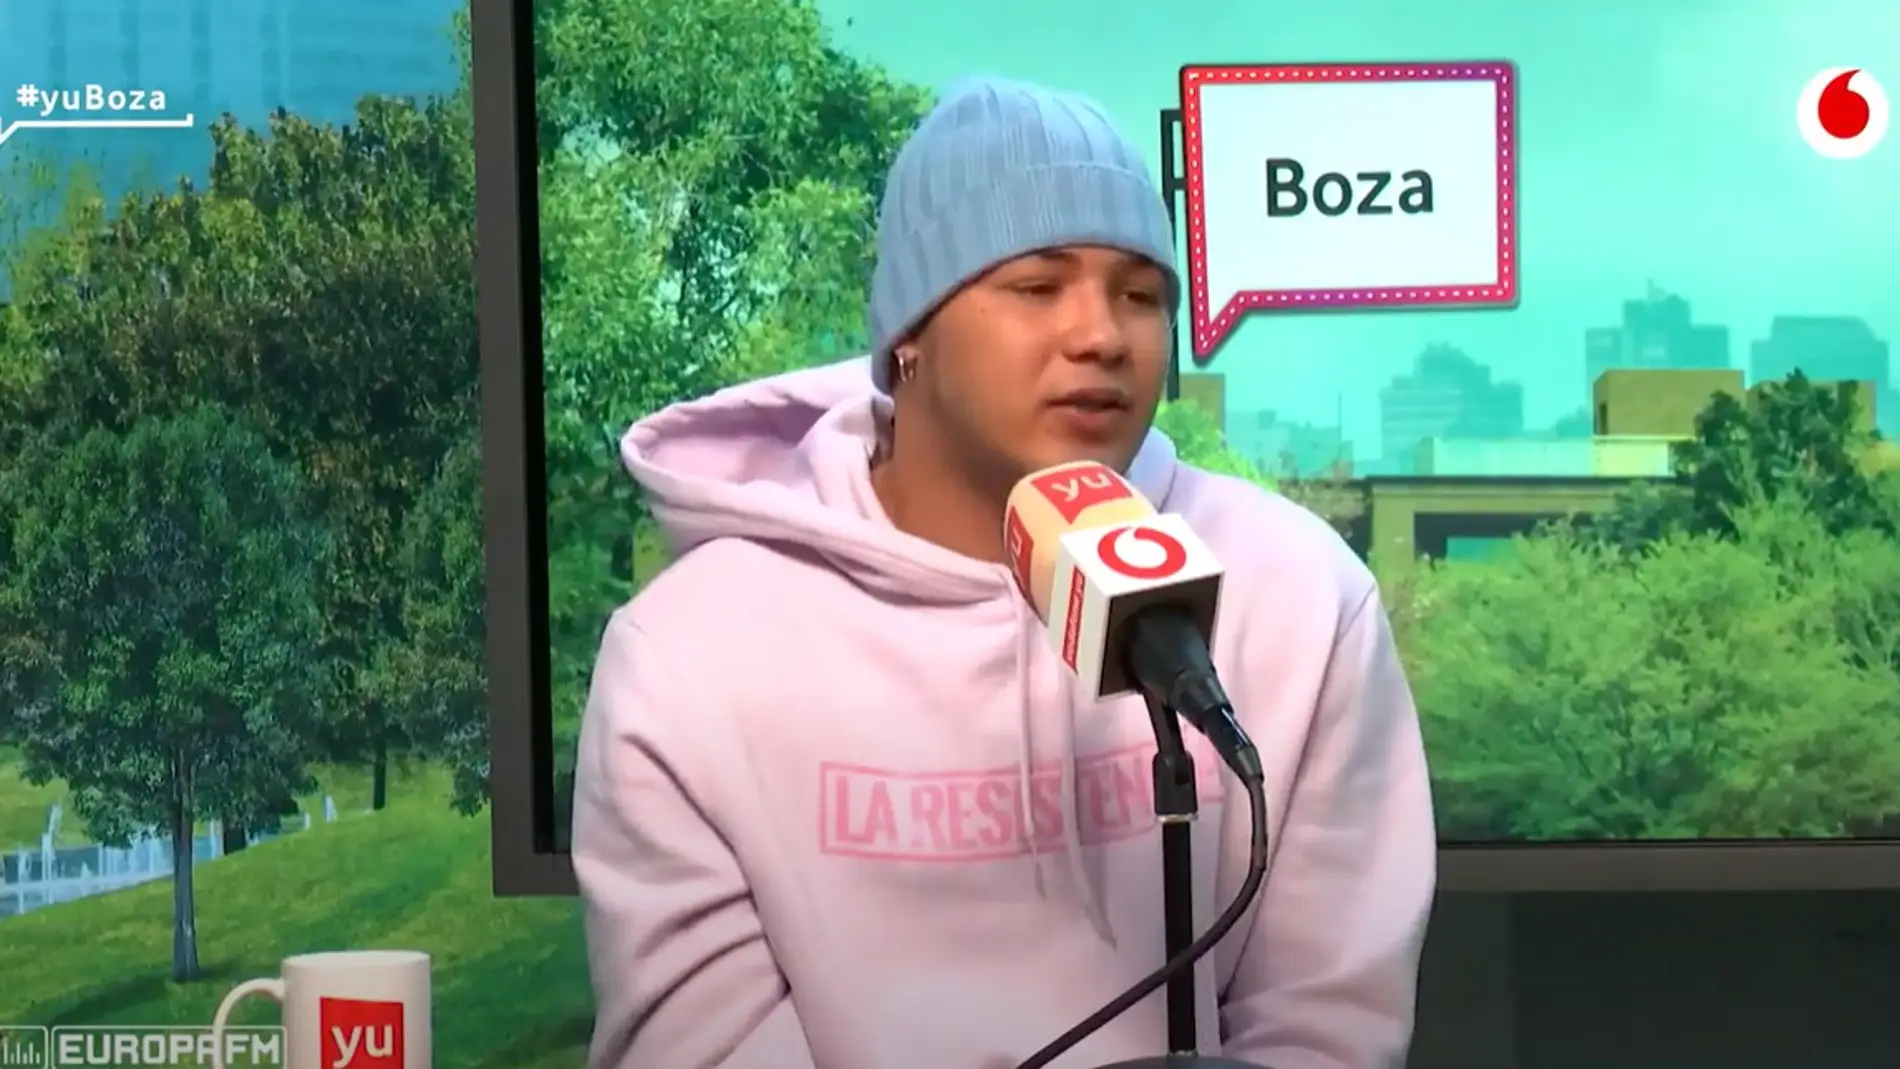 Boza: "Cuando me dijeron que estaba nominado al Grammy Latino pensé que se habían equivocado"